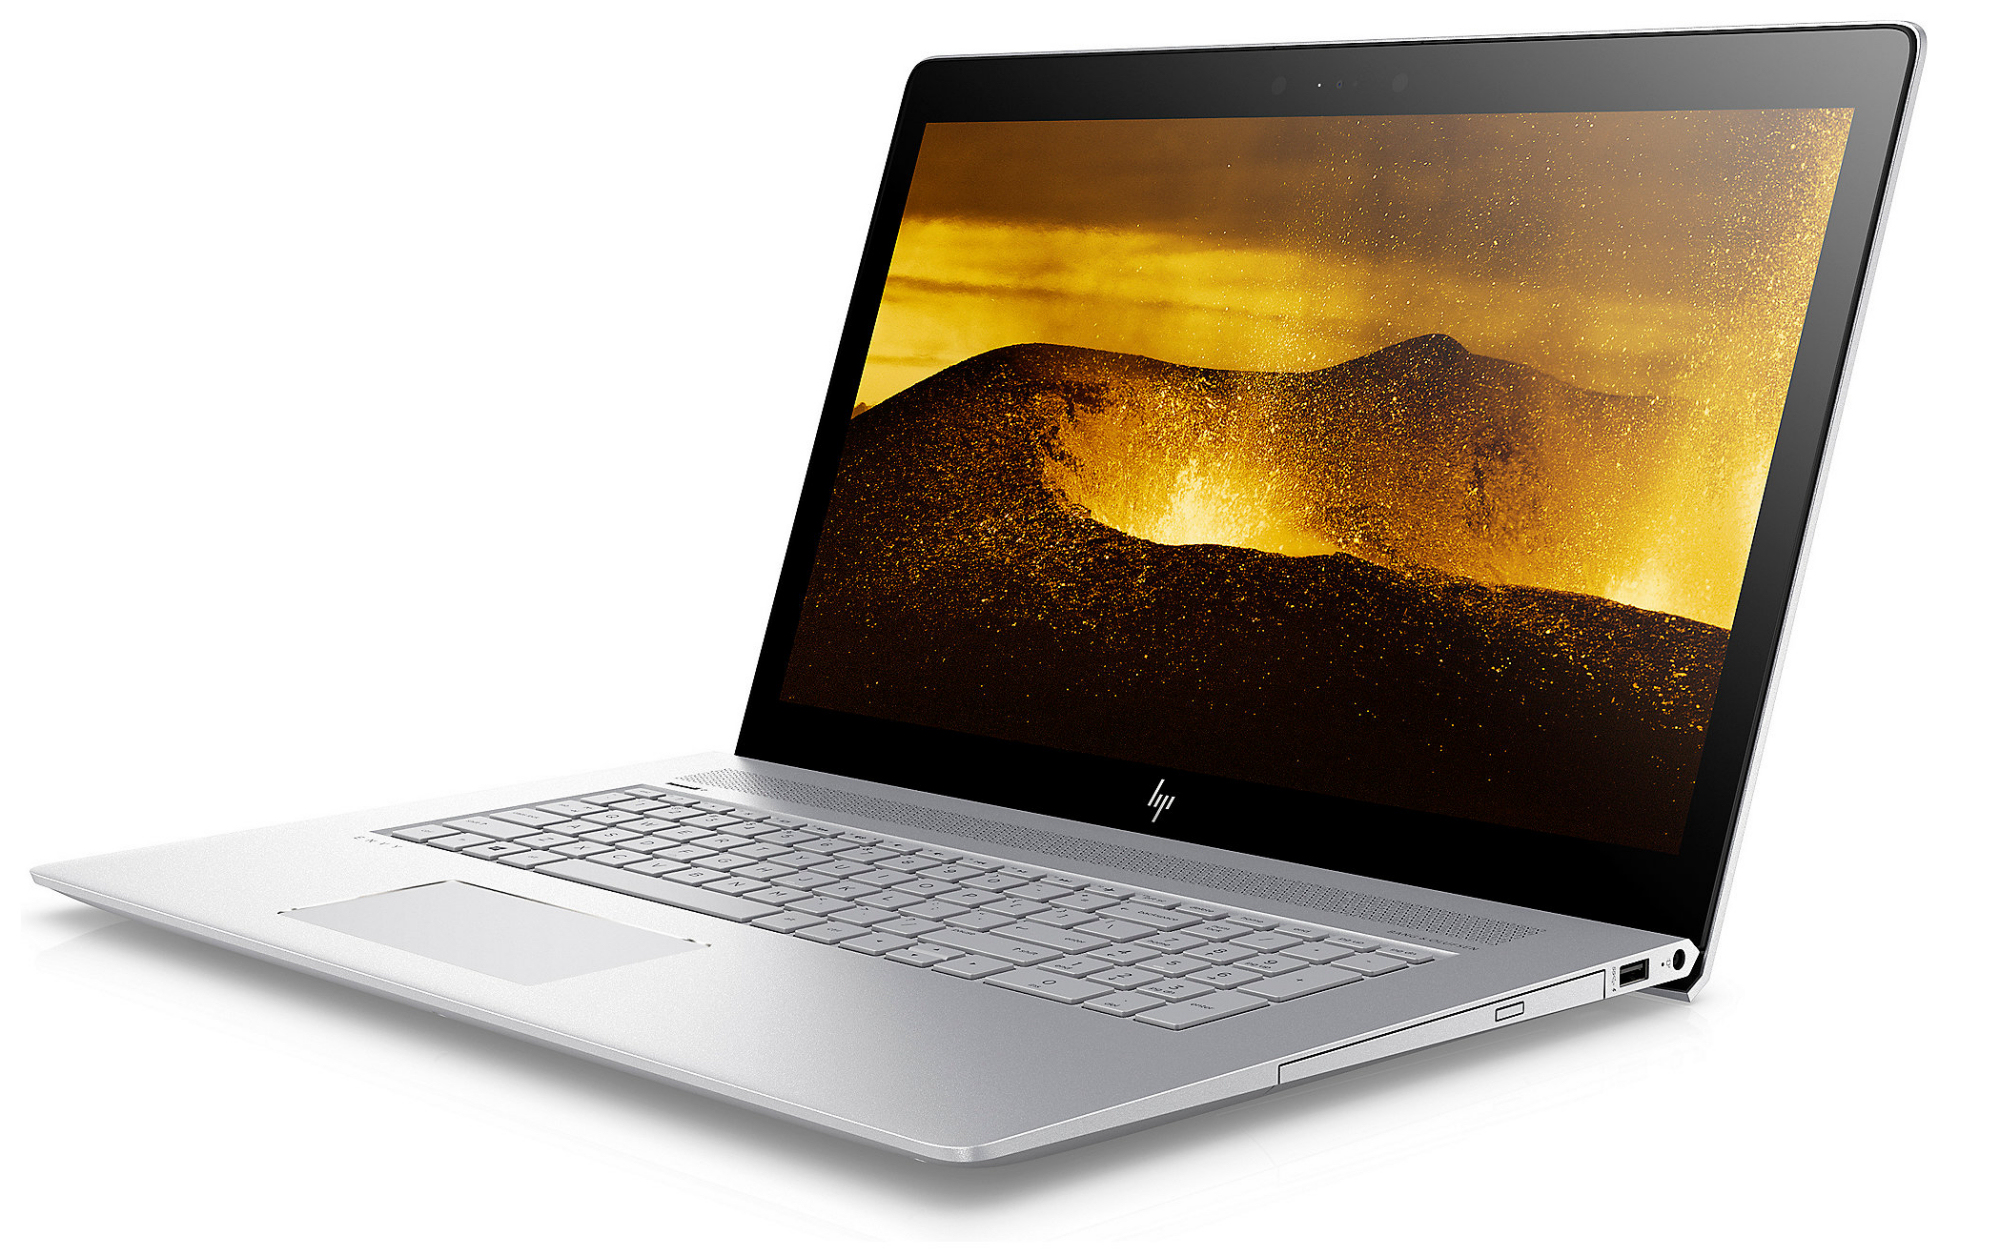 HP Envy 17 (i5-8250U, MX150, SSD, FHD) Laptop Review 